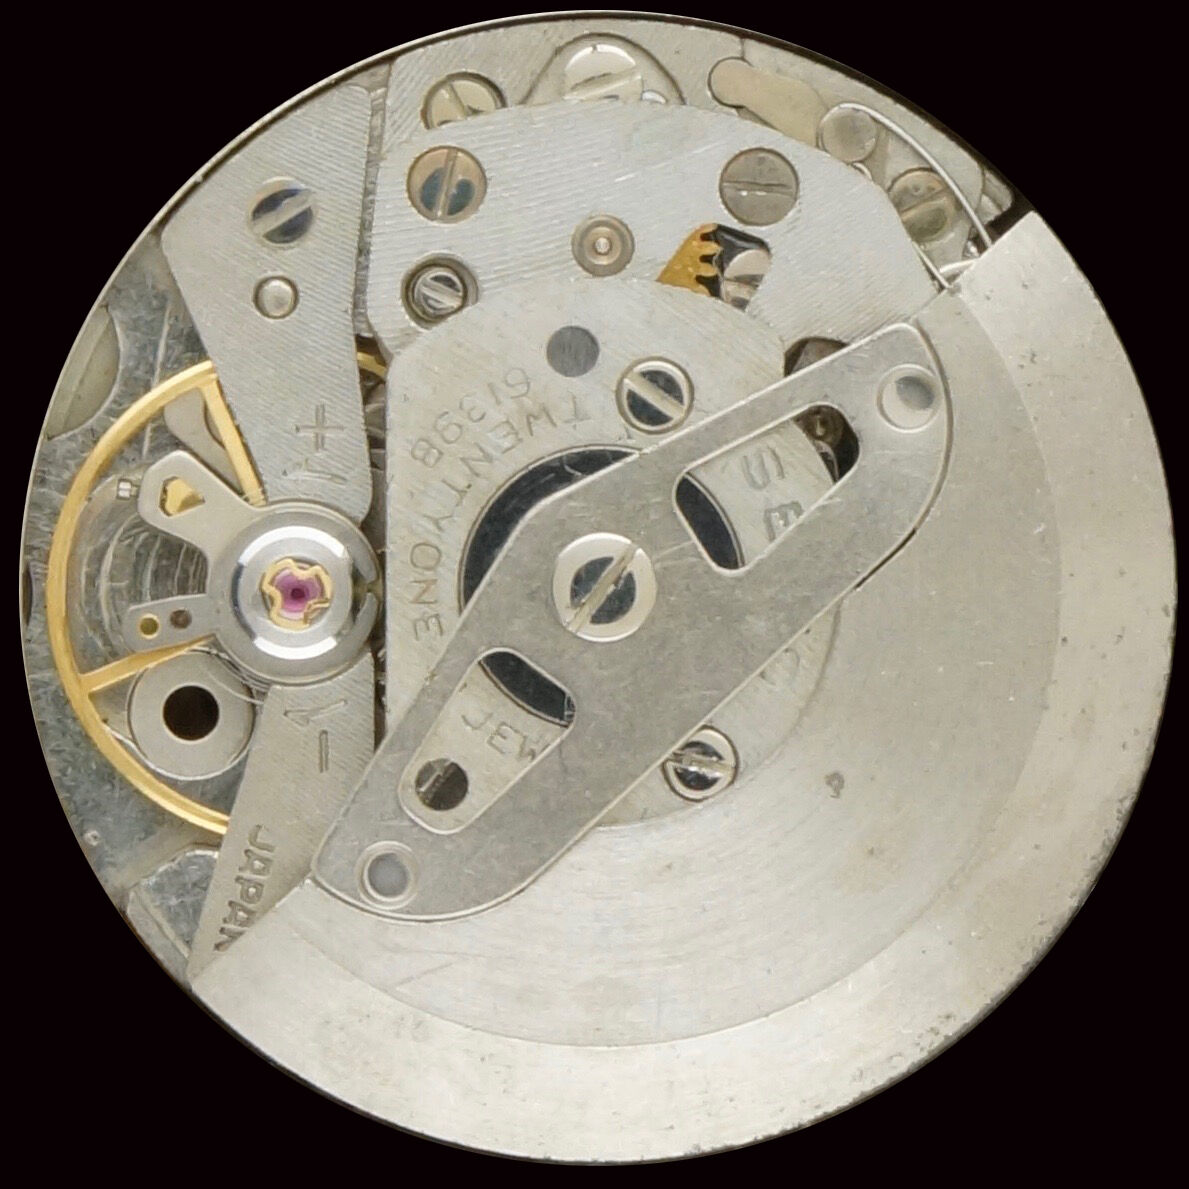 Seiko 6139 | A La Clinique Horlogère, réparation et vente de montres,  Porrentruy, Jura, Suisse